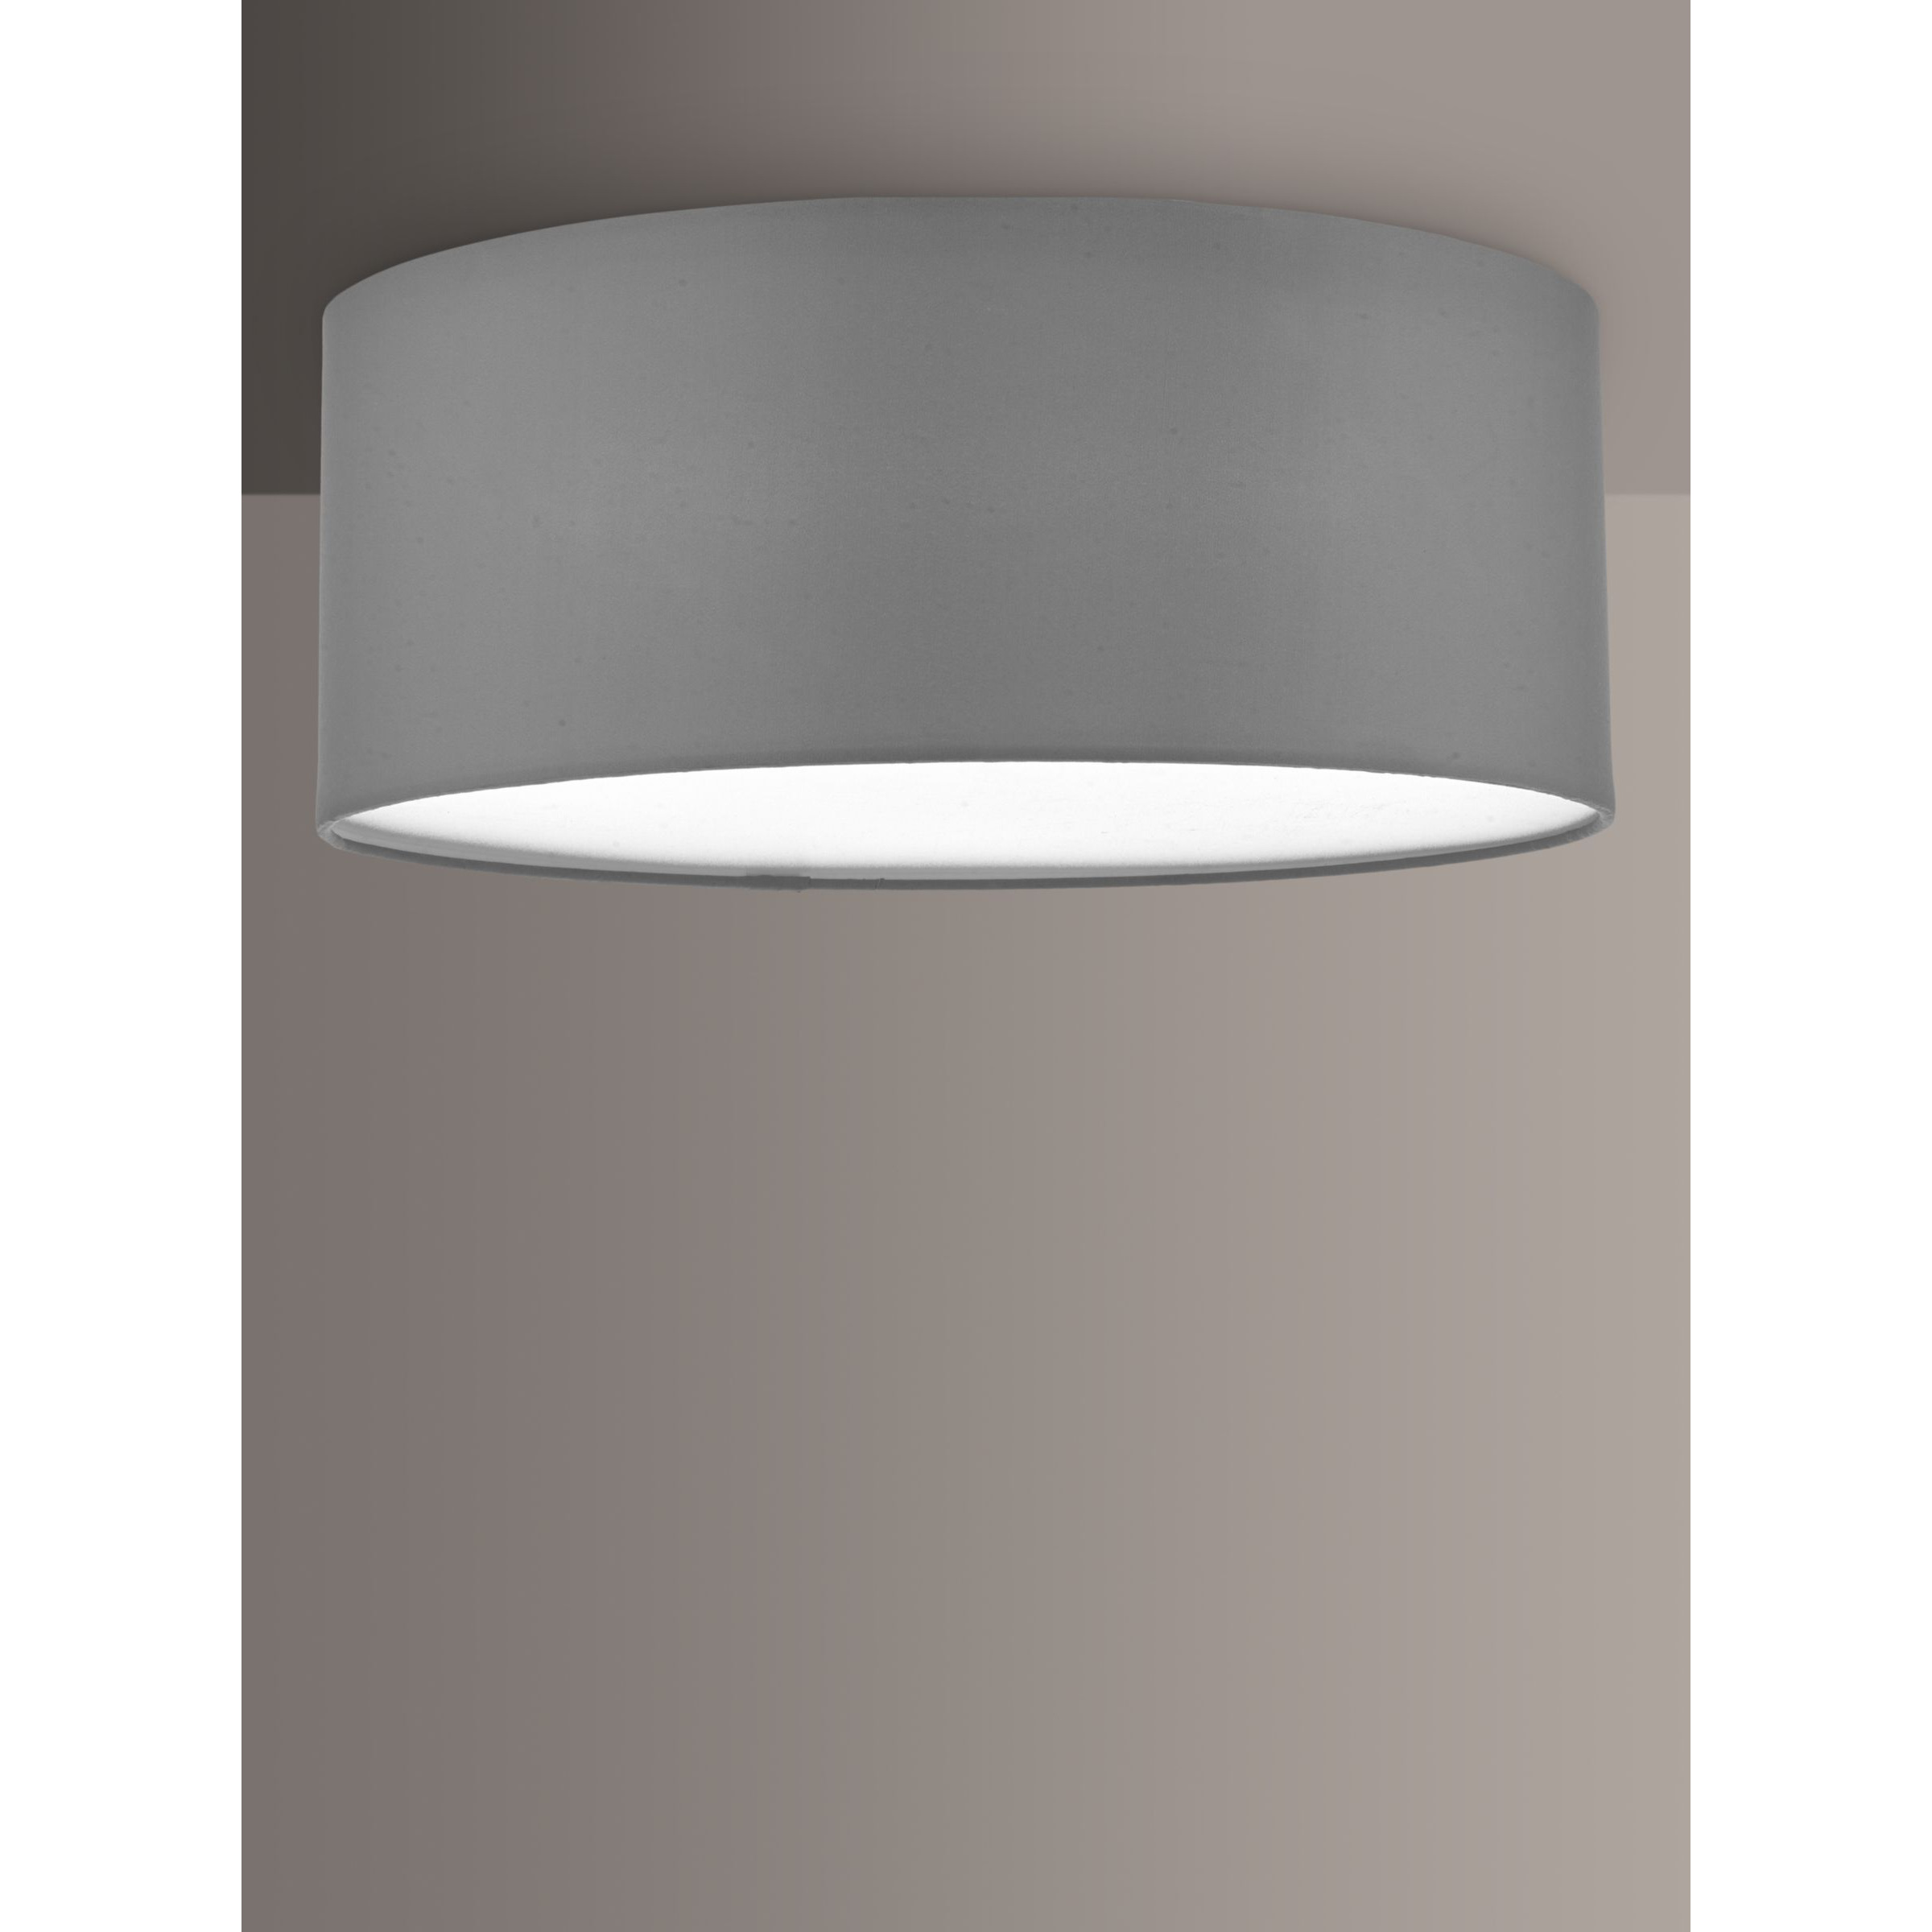 Där Cierro Diffuser Flush Ceiling Light, Dia.40cm - image 1